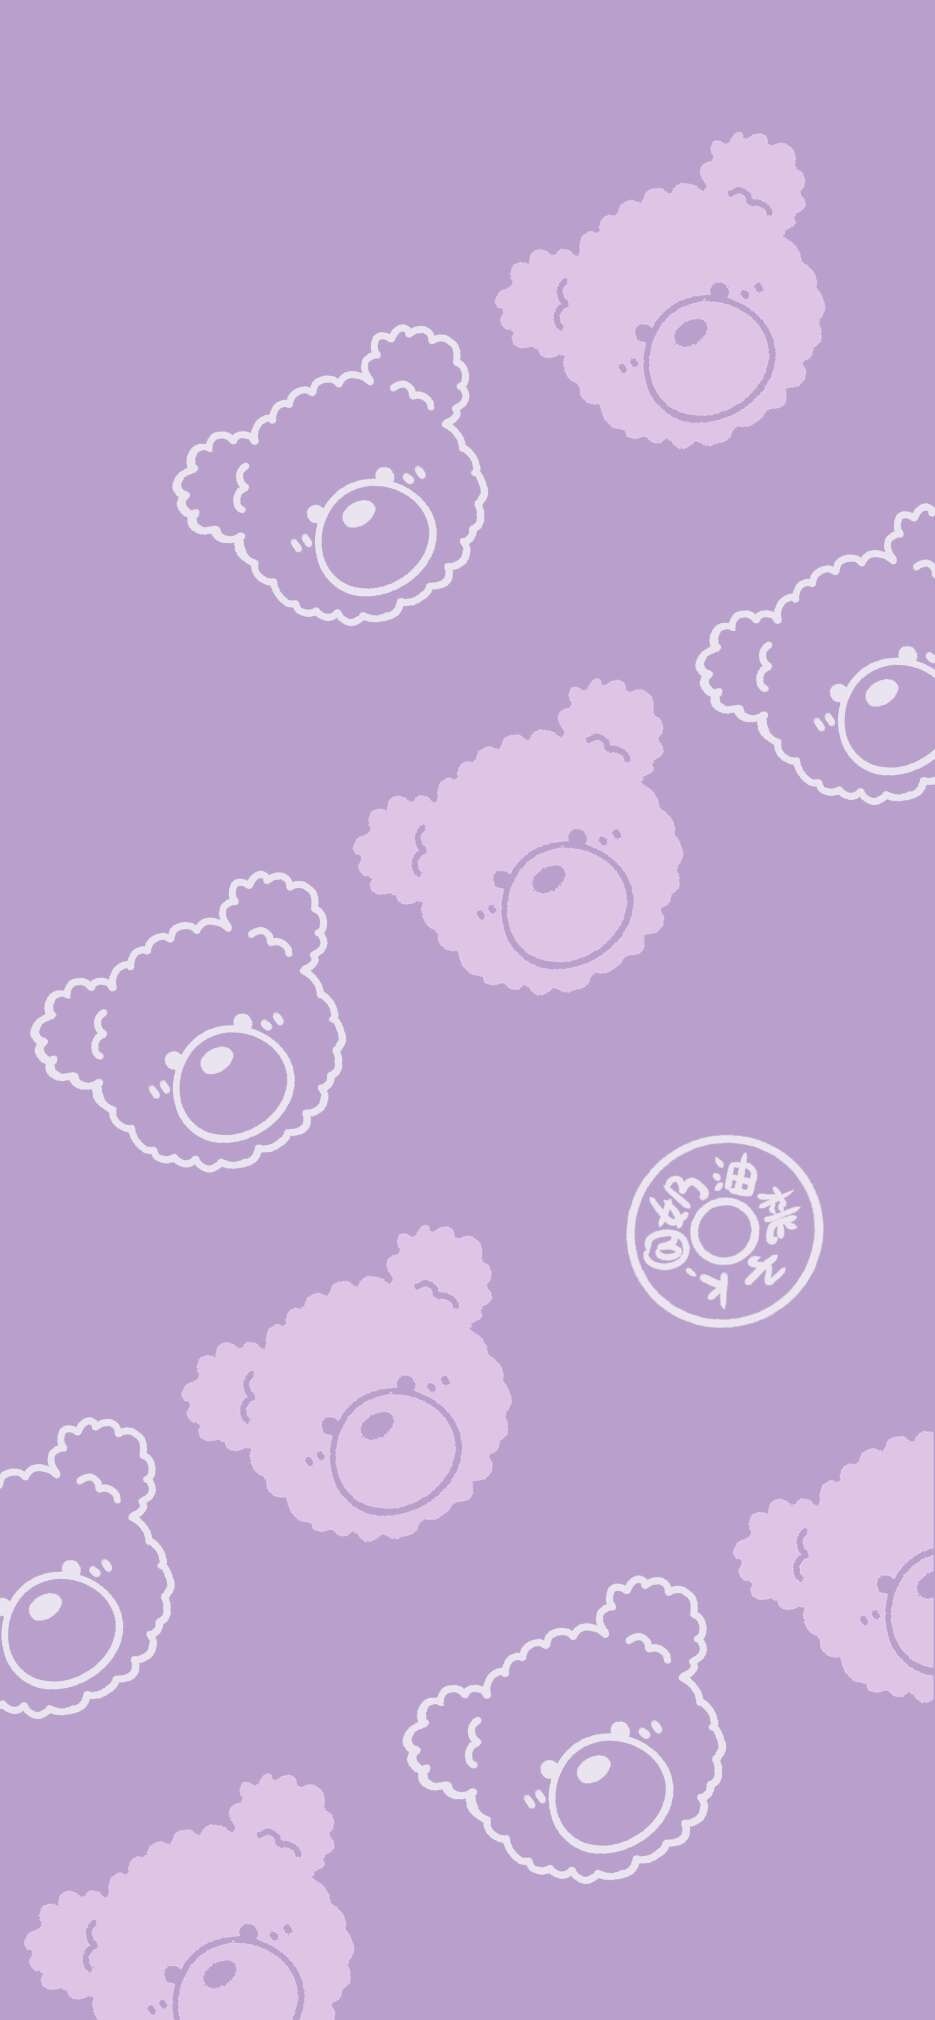 紫色系小熊 壁纸 手机壁纸 动漫卡通手机壁纸 我要个性网